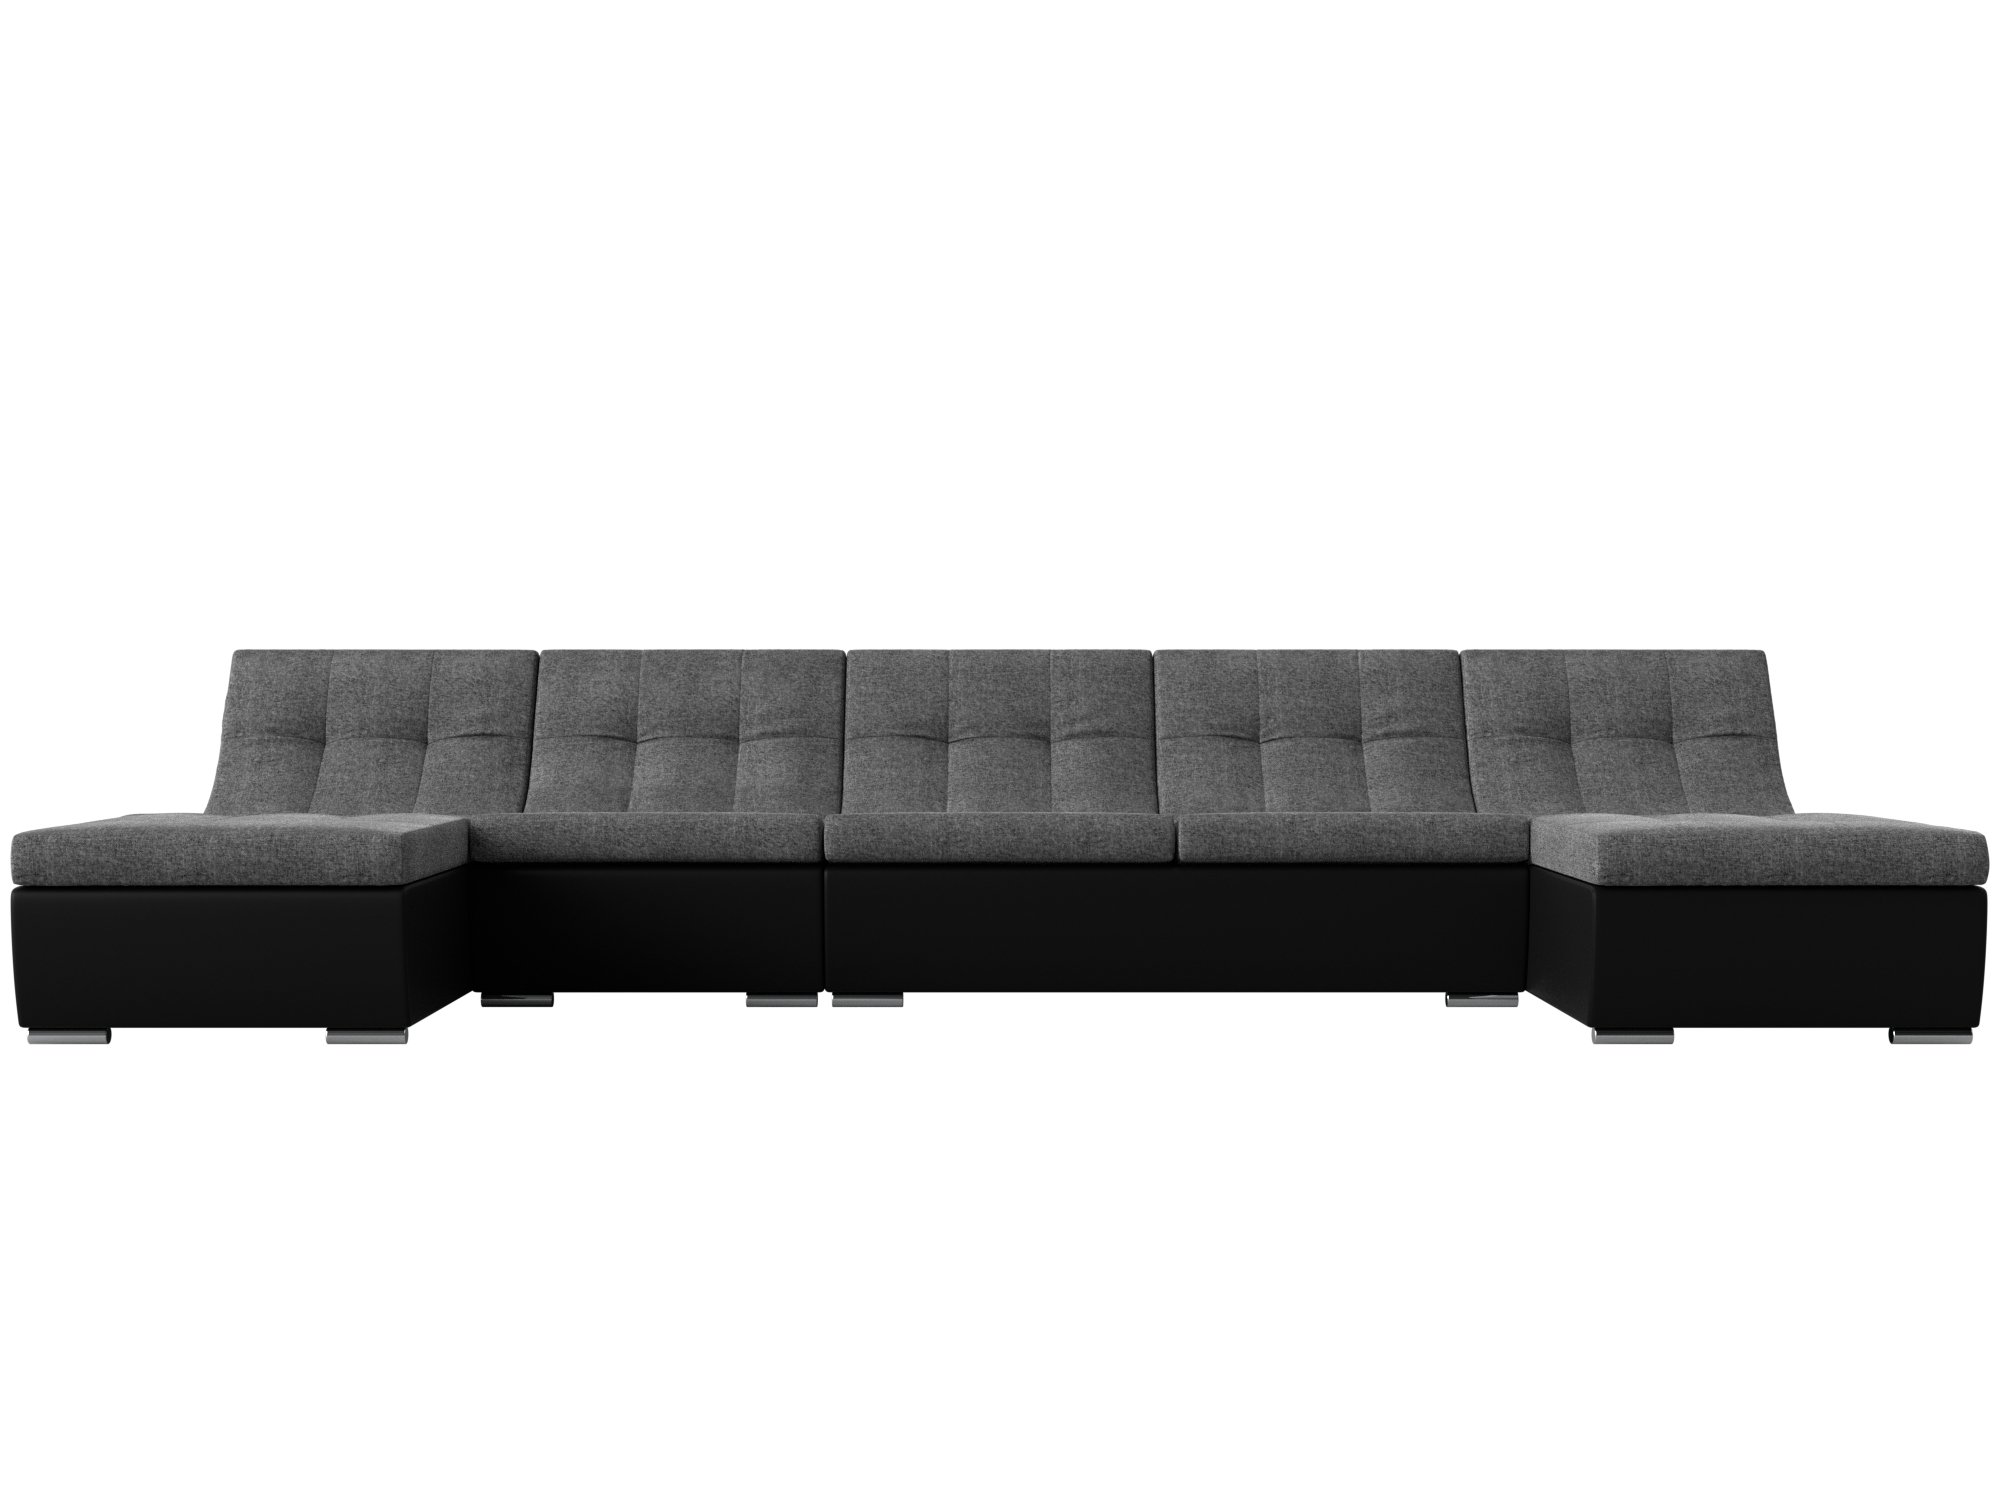 П-образный модульный диван Монреаль Long MebelVia Серый, Черный, Рогожка, Экокожа, ЛДСП п образный диван софия механизм пантограф рогожка цвет серый